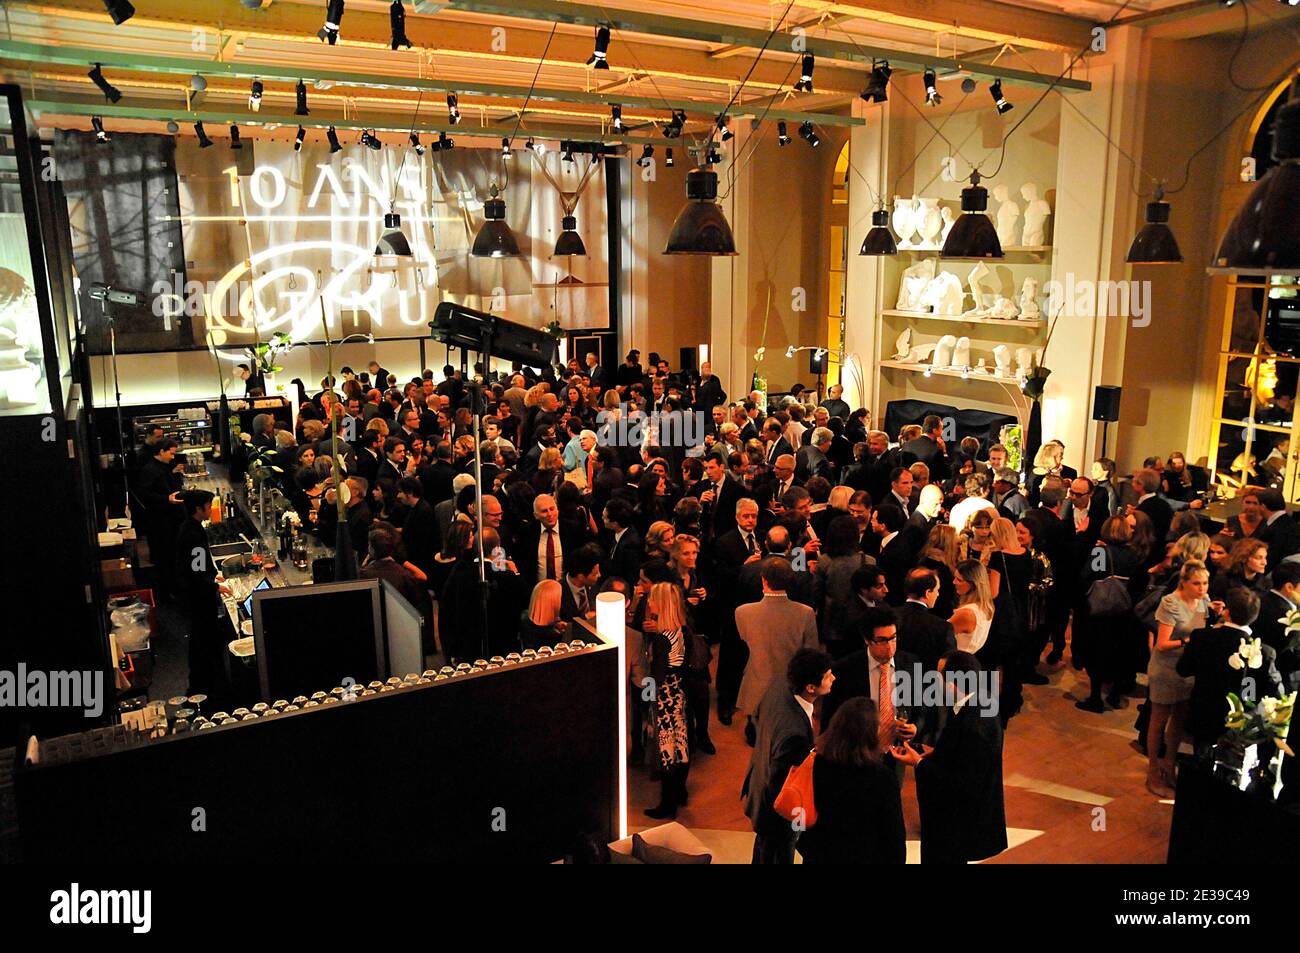 Atmosphäre während des Platinum MasterCard Abends im Grand Palais in Paris, Frankreich am 4. Oktober 2010. Foto von Thierry Plessis/ABACAPRESS.COM Stockfoto